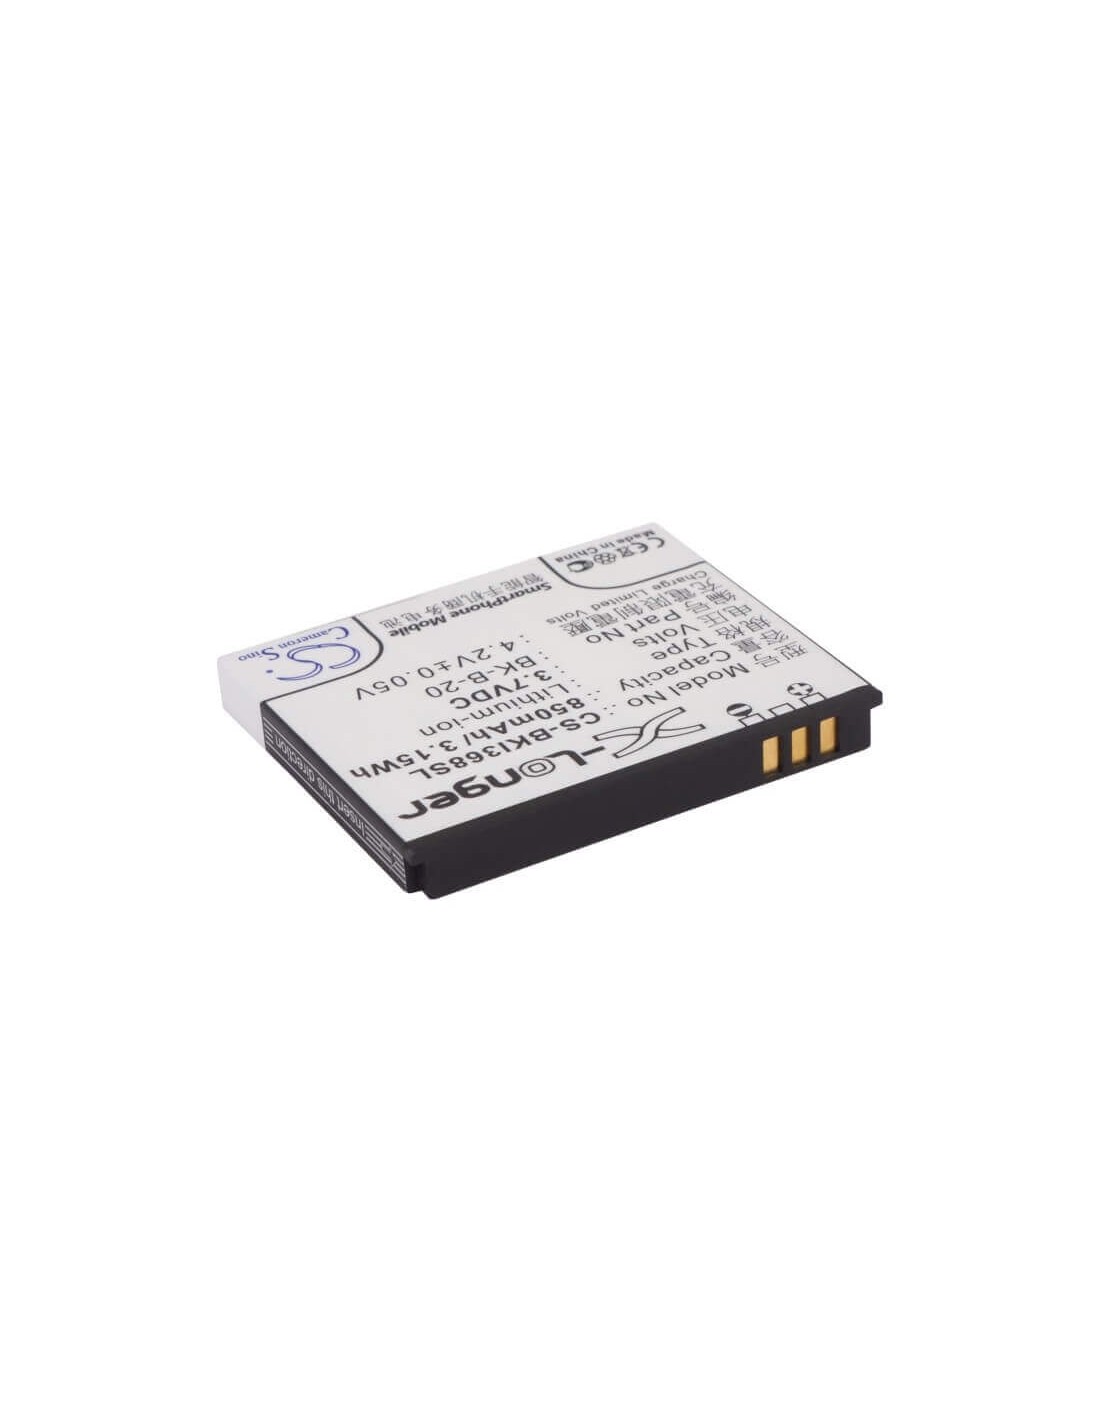 Battery for BBK i389, i388, i368 3.7V, 850mAh - 3.15Wh